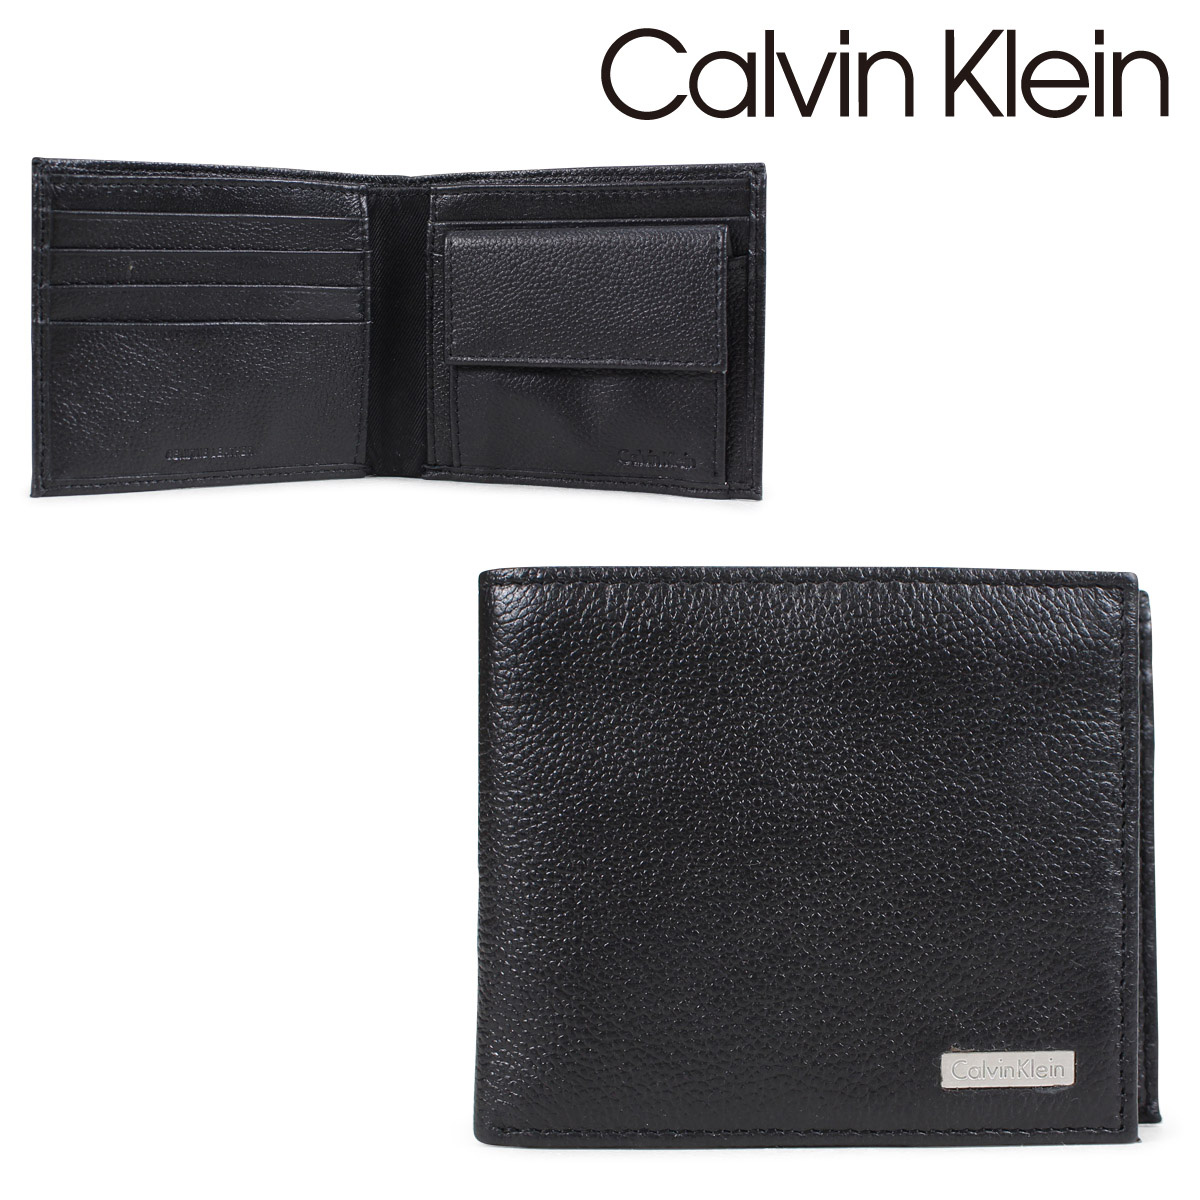 calvin klein wallet purse